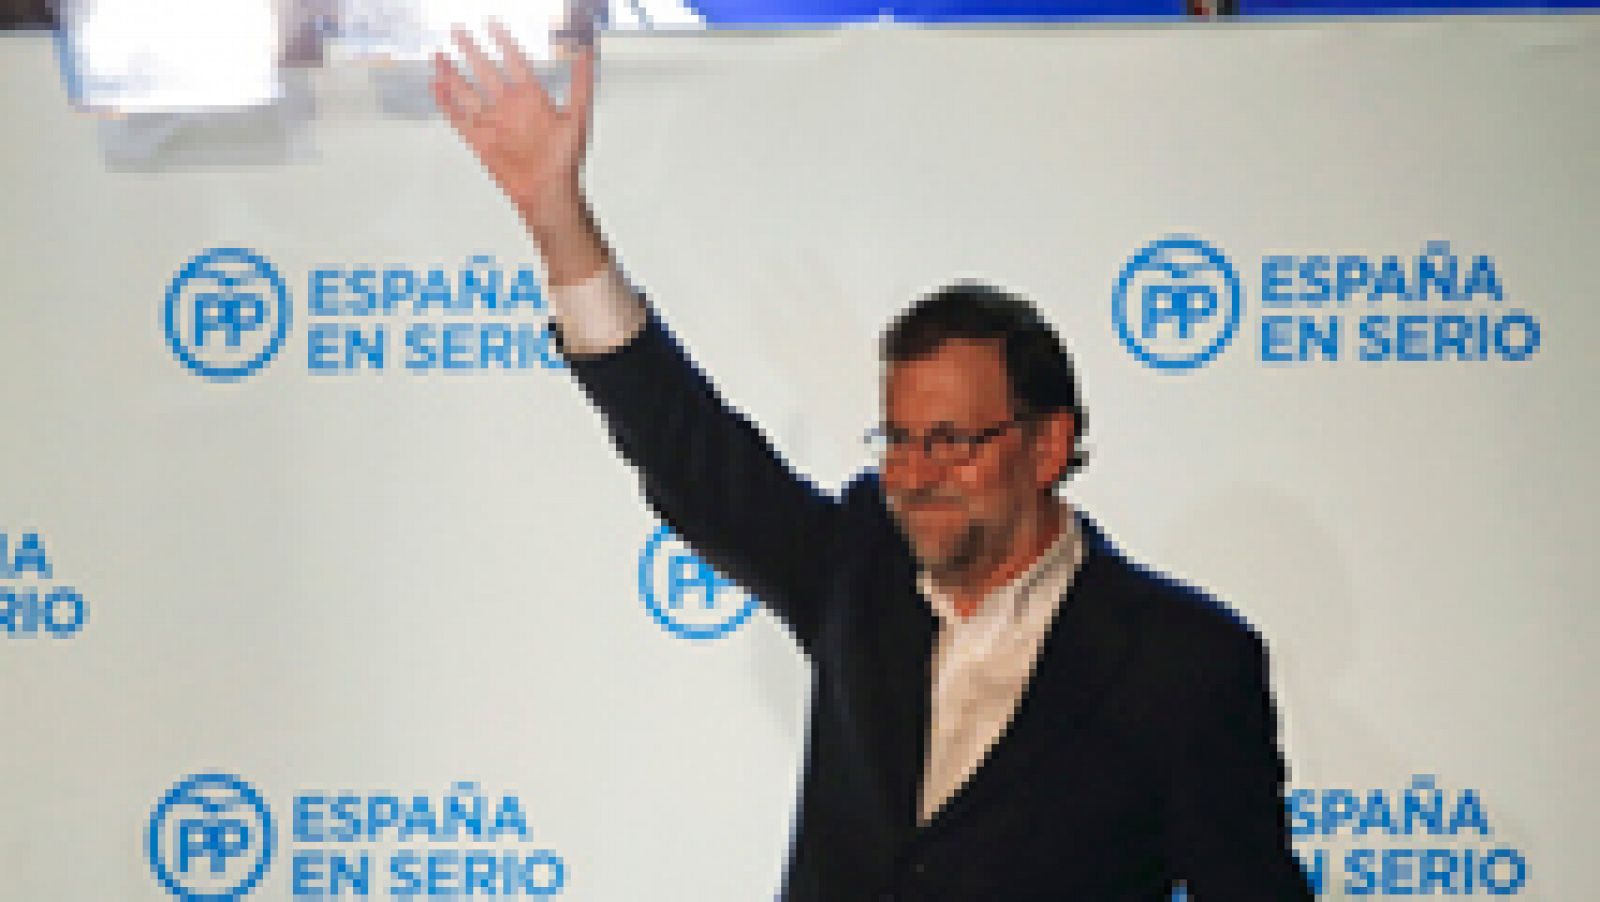 El presidente del Gobierno y candidato del PP a la reelección, Mariano Rajoy, ha asegurado que intentará formar gobierno porque su formación ha "ganado" las elecciones generales 2015 con más de 1,6 millones de votos de diferencia sobre el segundo y t